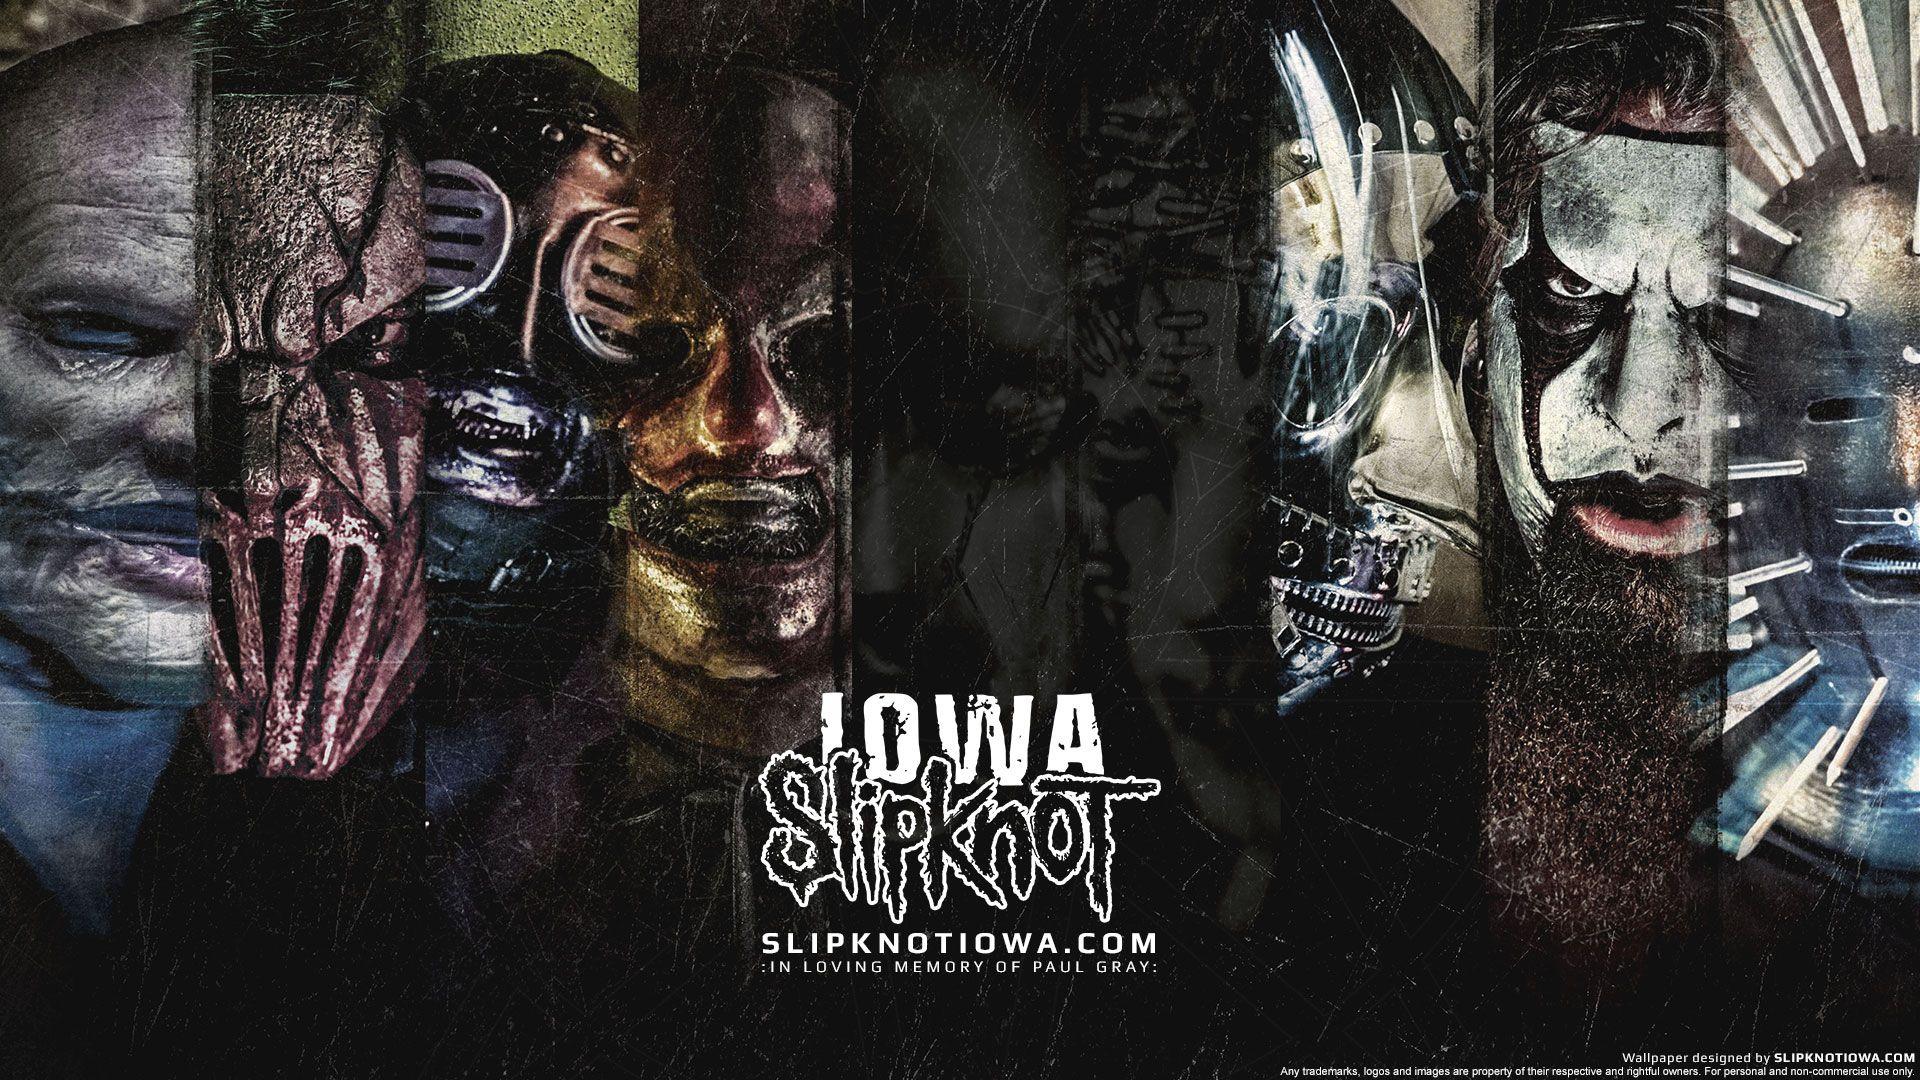 Slipknot Wallpaper, Download Slipknot HD Wallpaper for Free, D